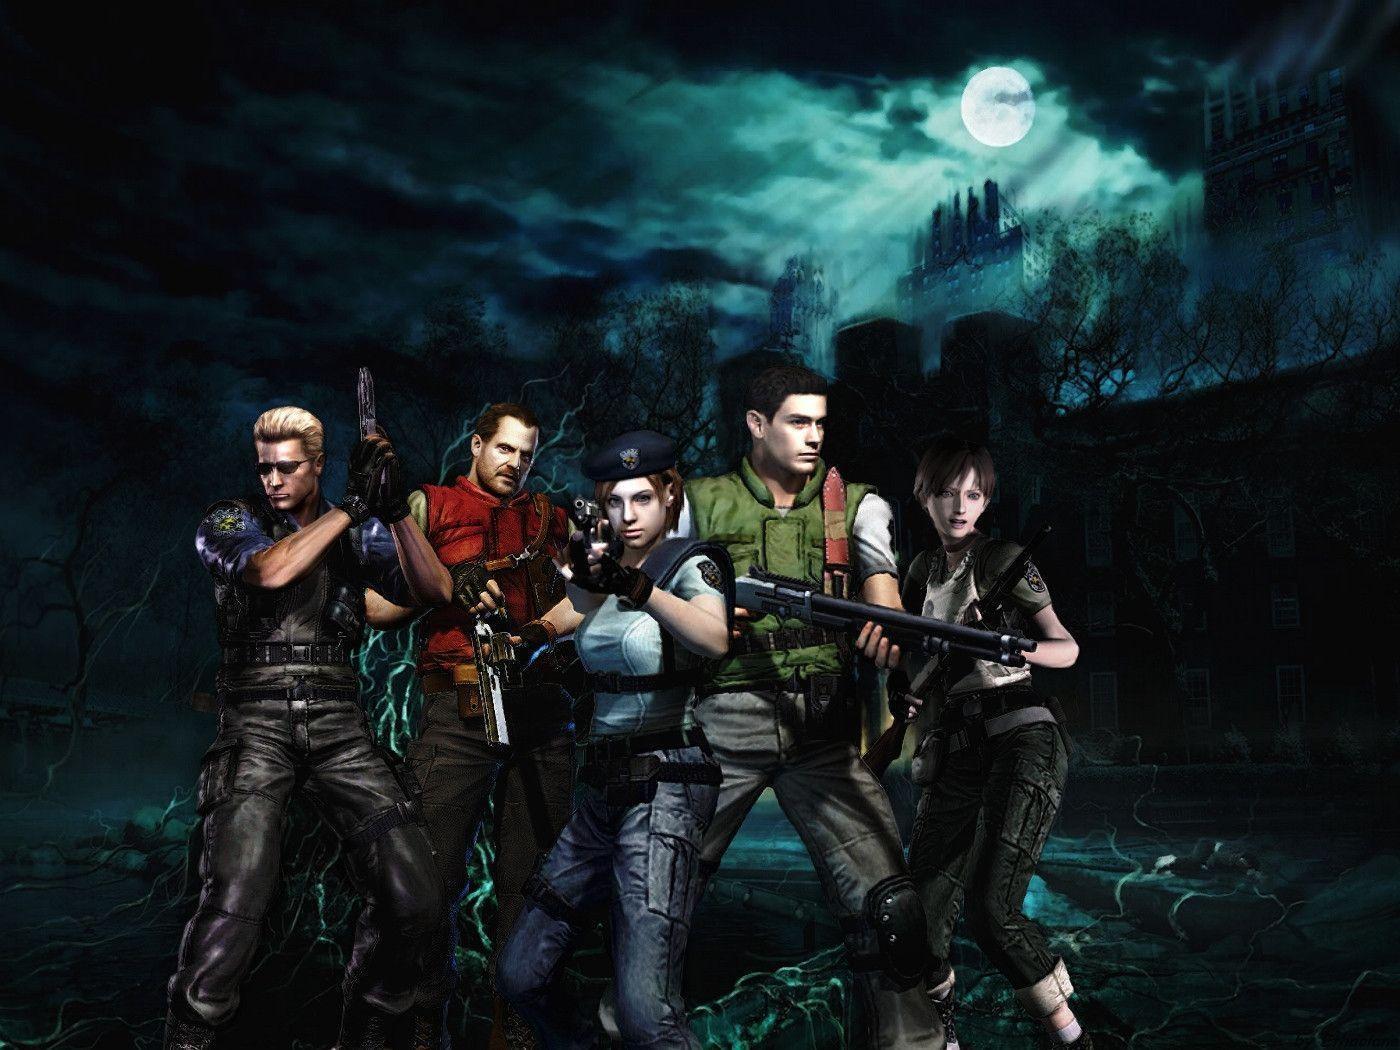 Resident Evil 1 Wallpaper Free Resident Evil 1 Background